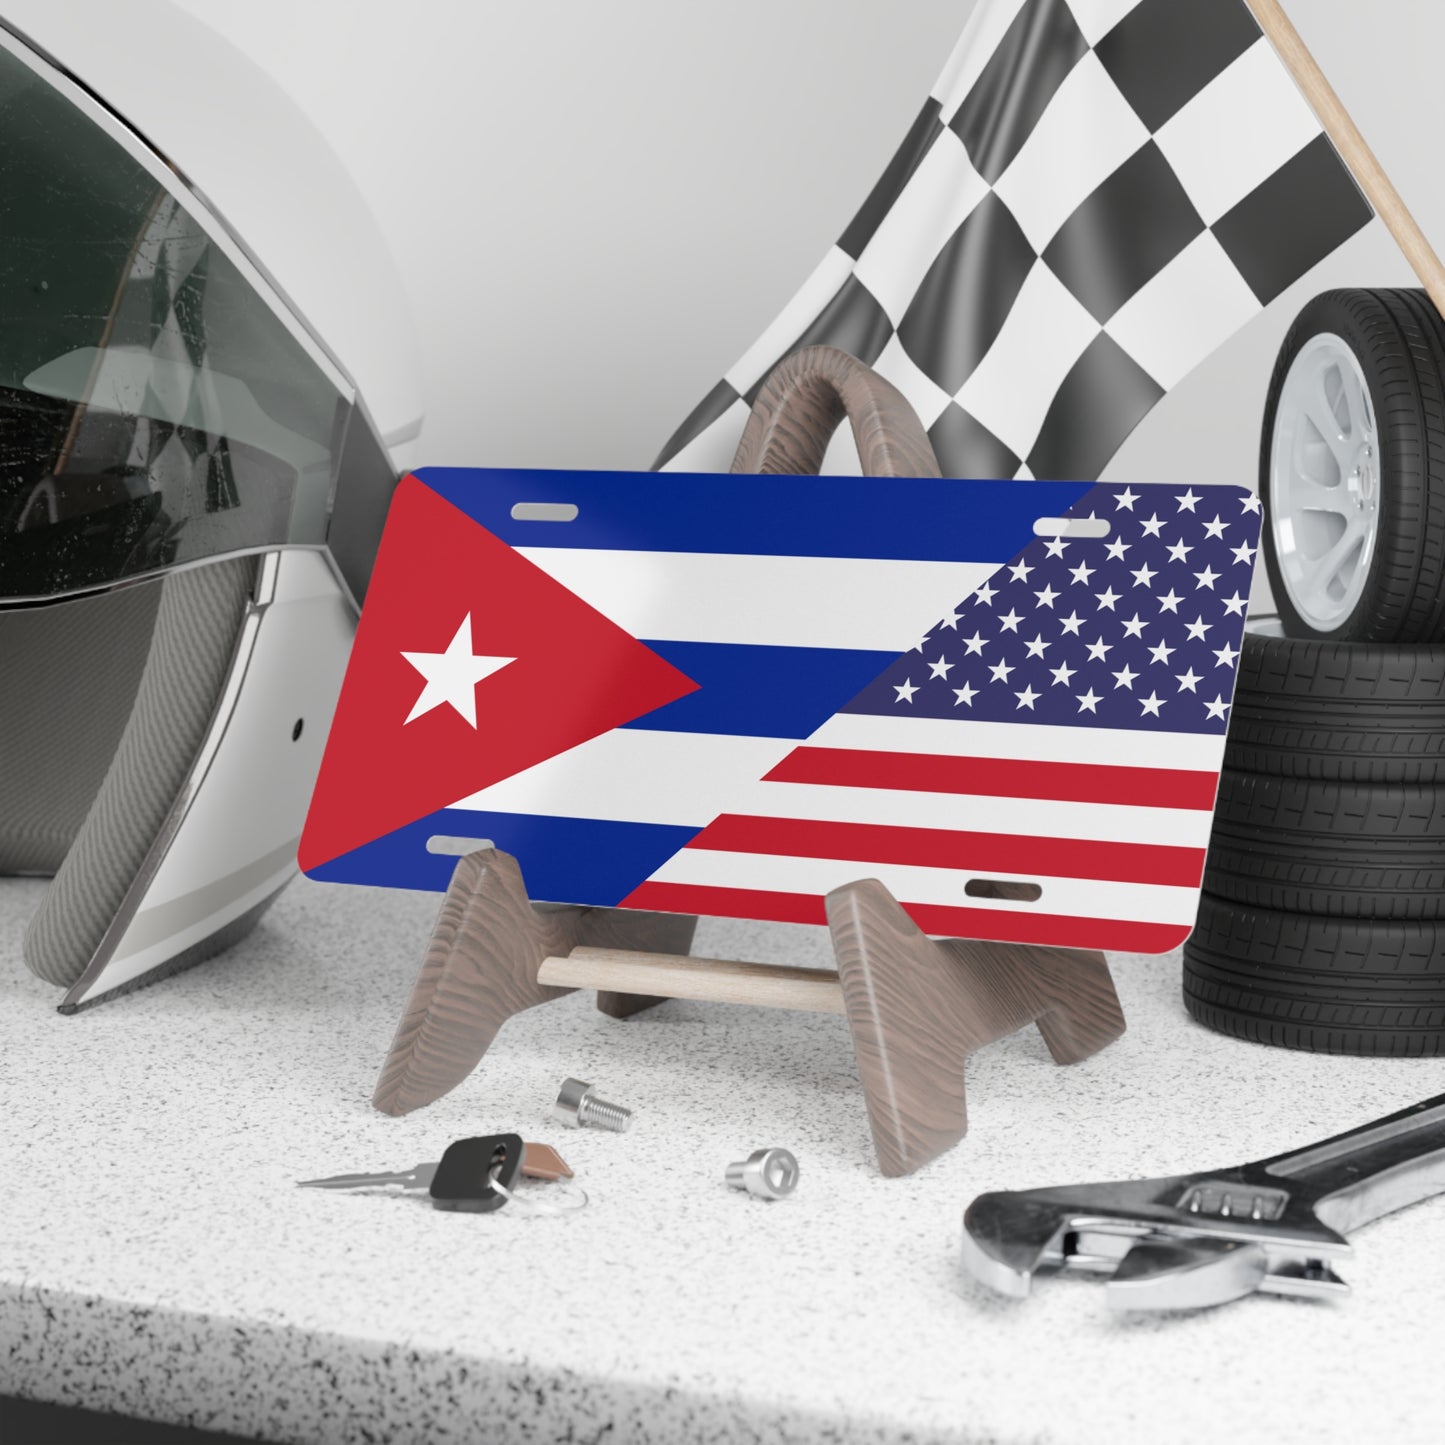 Cuban American Flag Vanity Plate